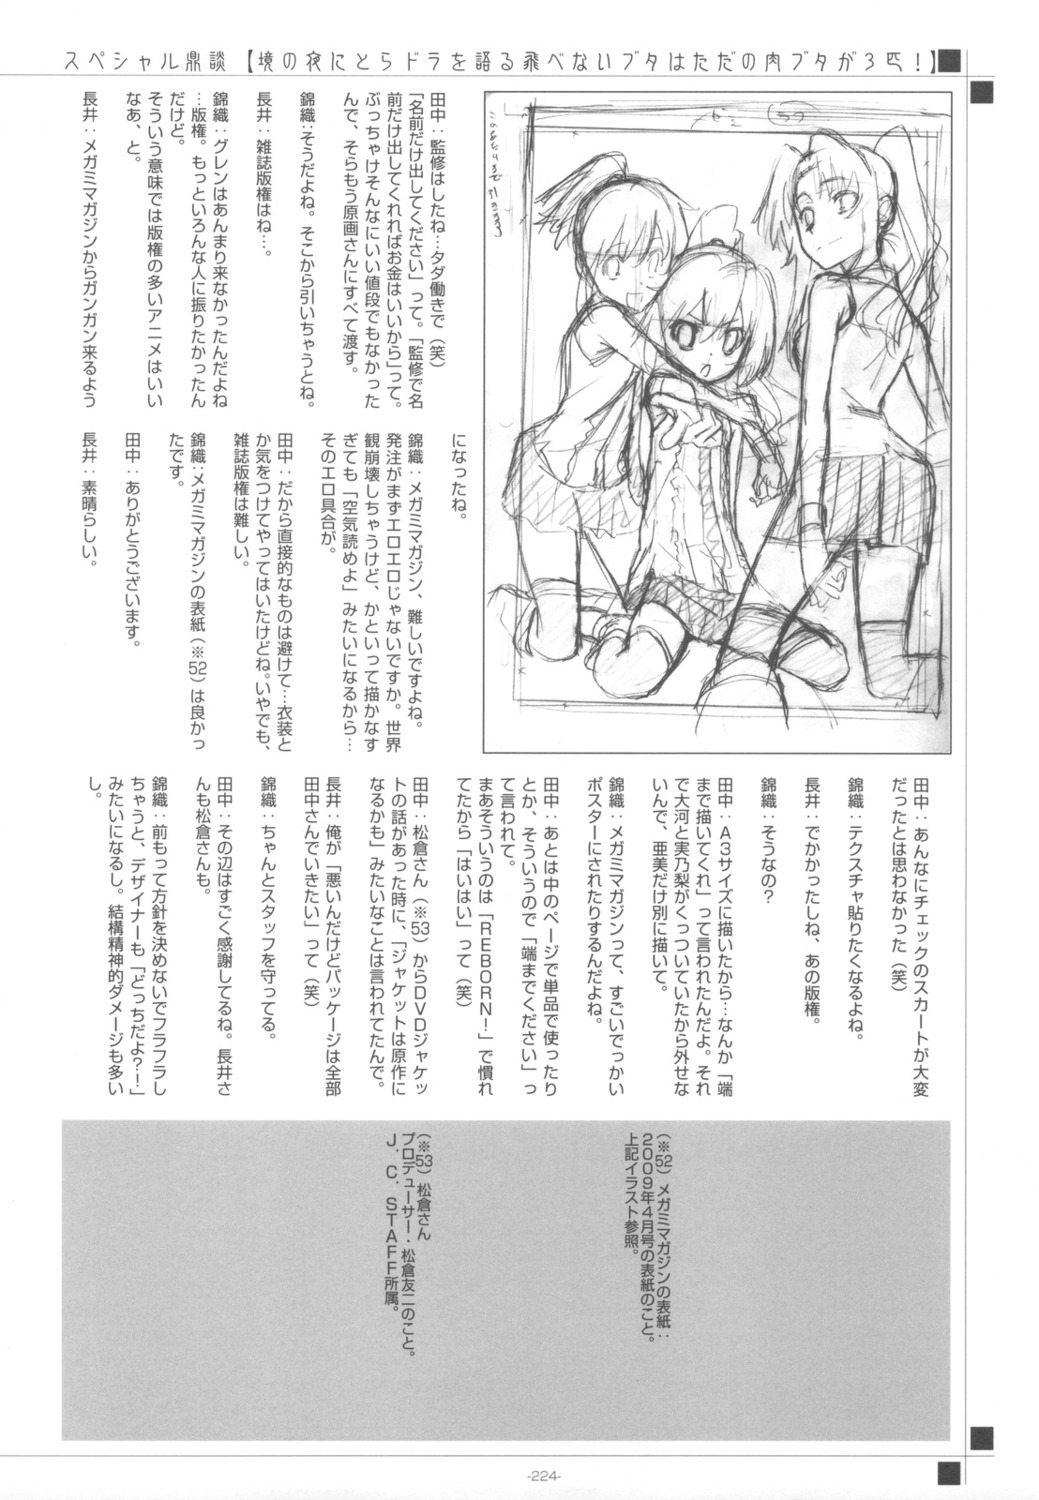 aisaka_taiga kawashima_ami kushieda_minori monochrome text toradora!